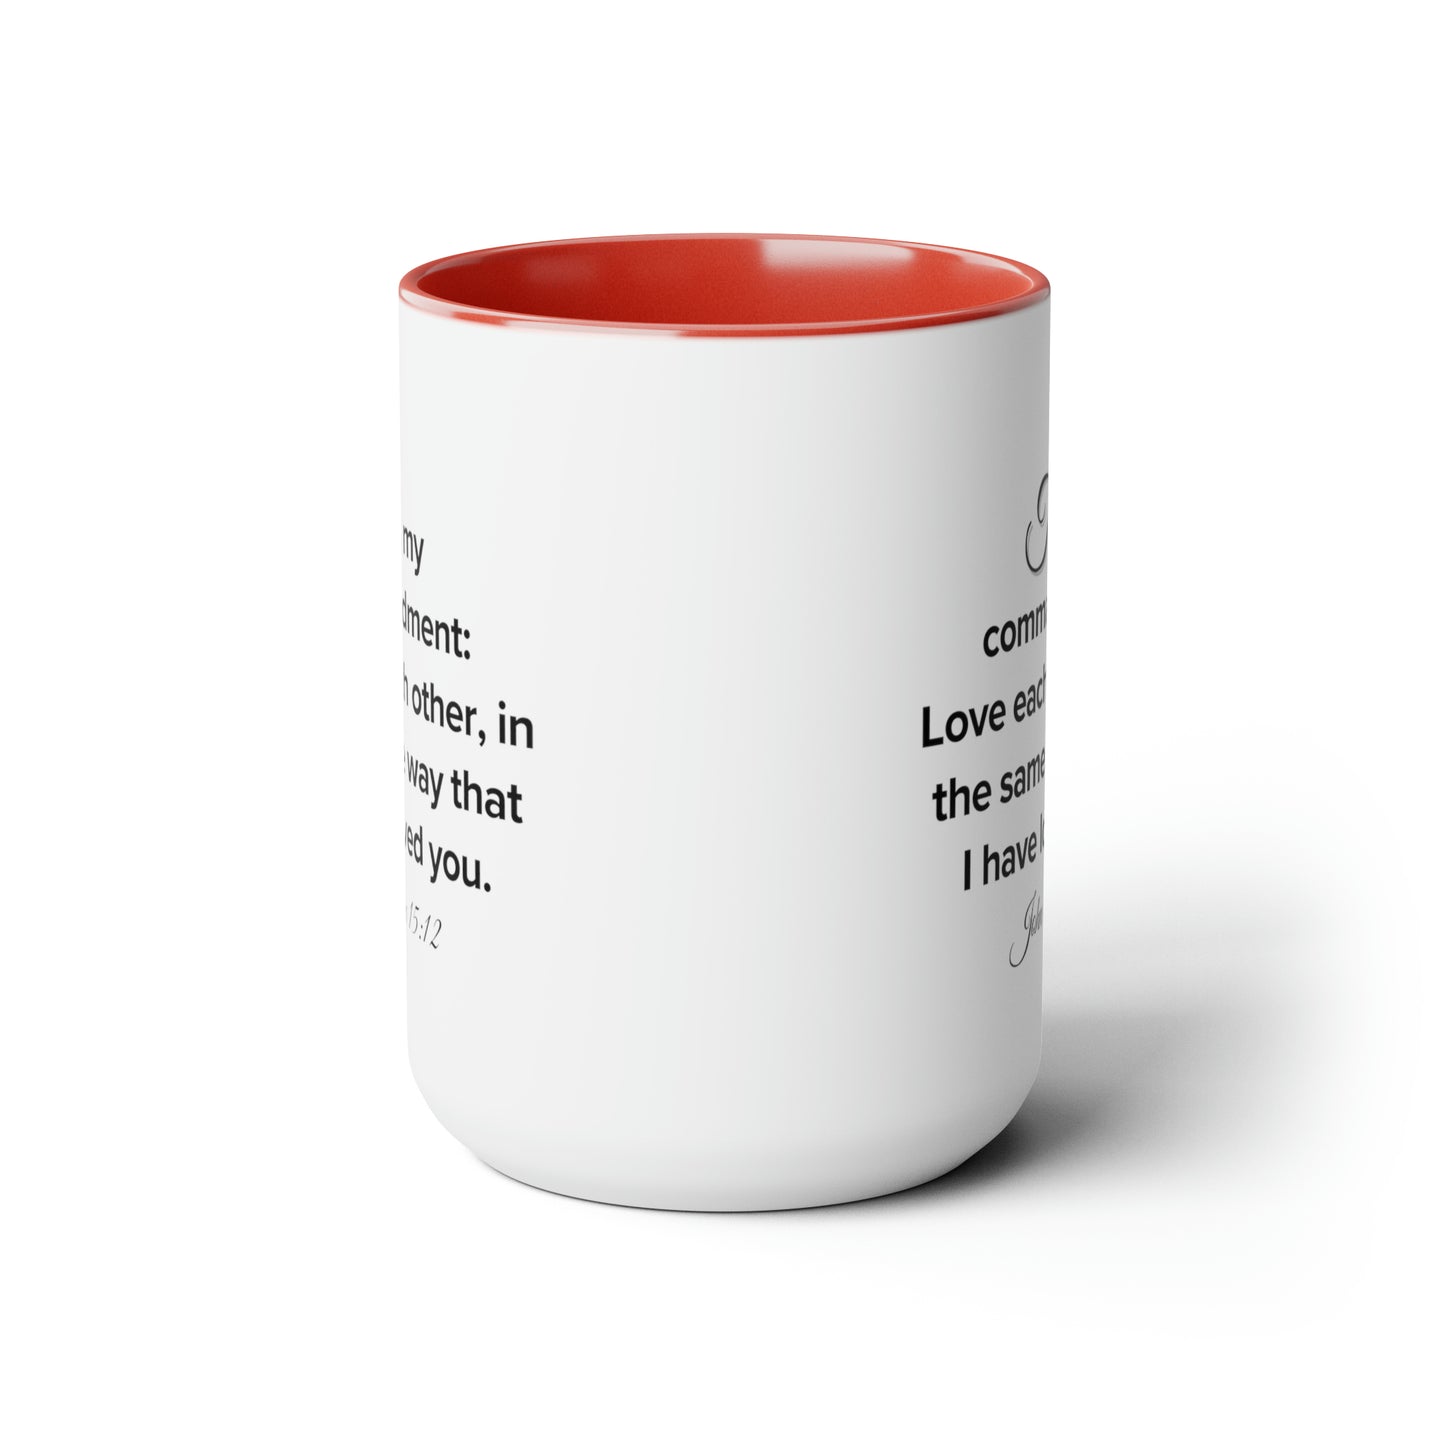 John 15:12, Two-Tone Coffee Mugs